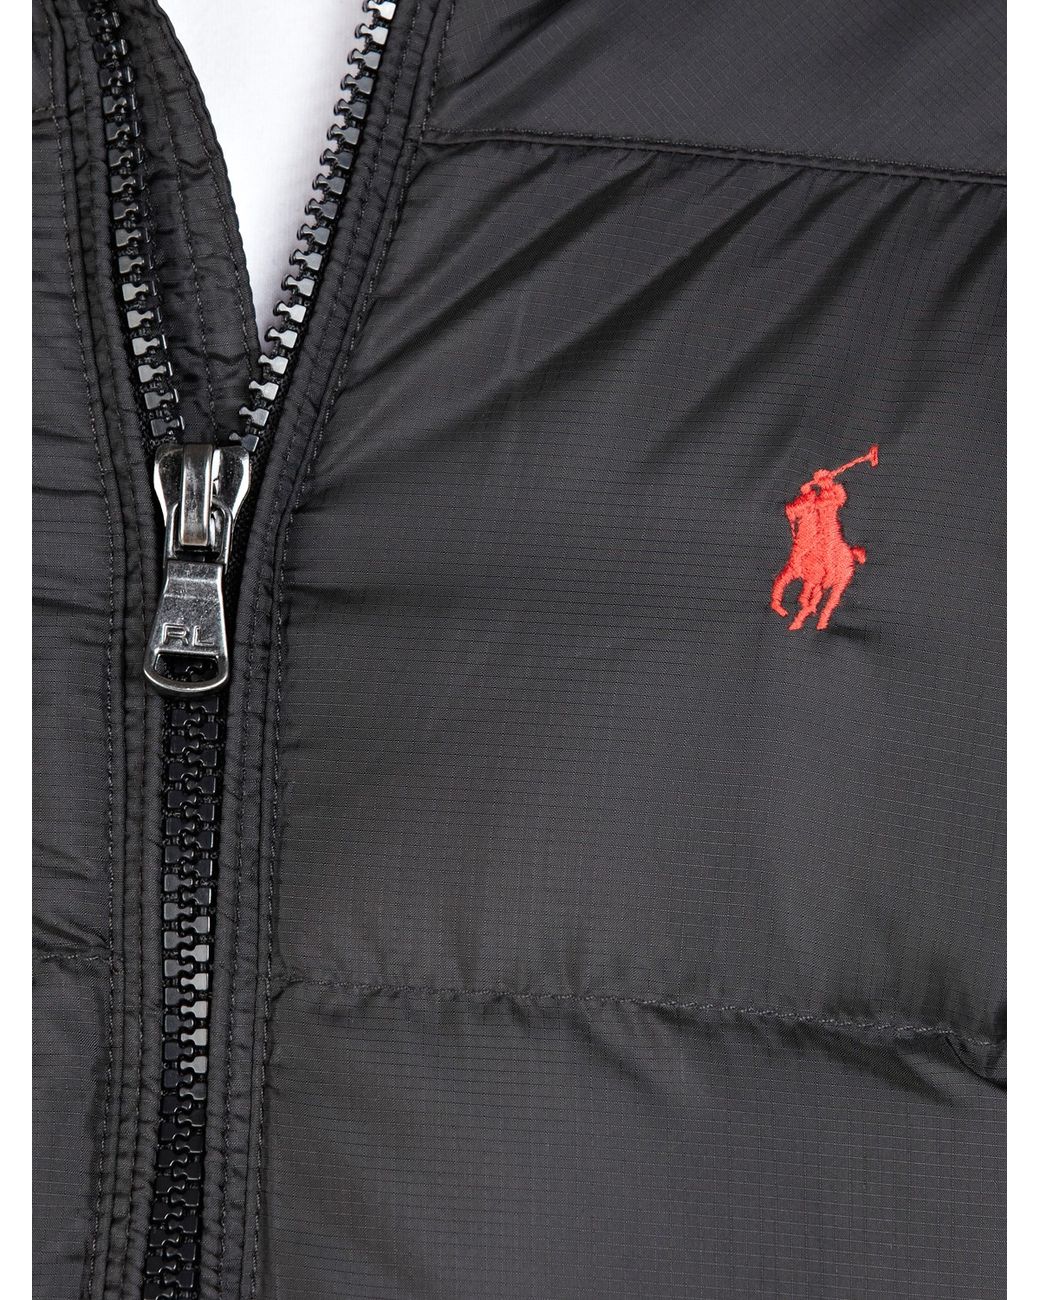 Polo Ralph Lauren Rl250 Puffer Jacket in Black for Men | Lyst UK